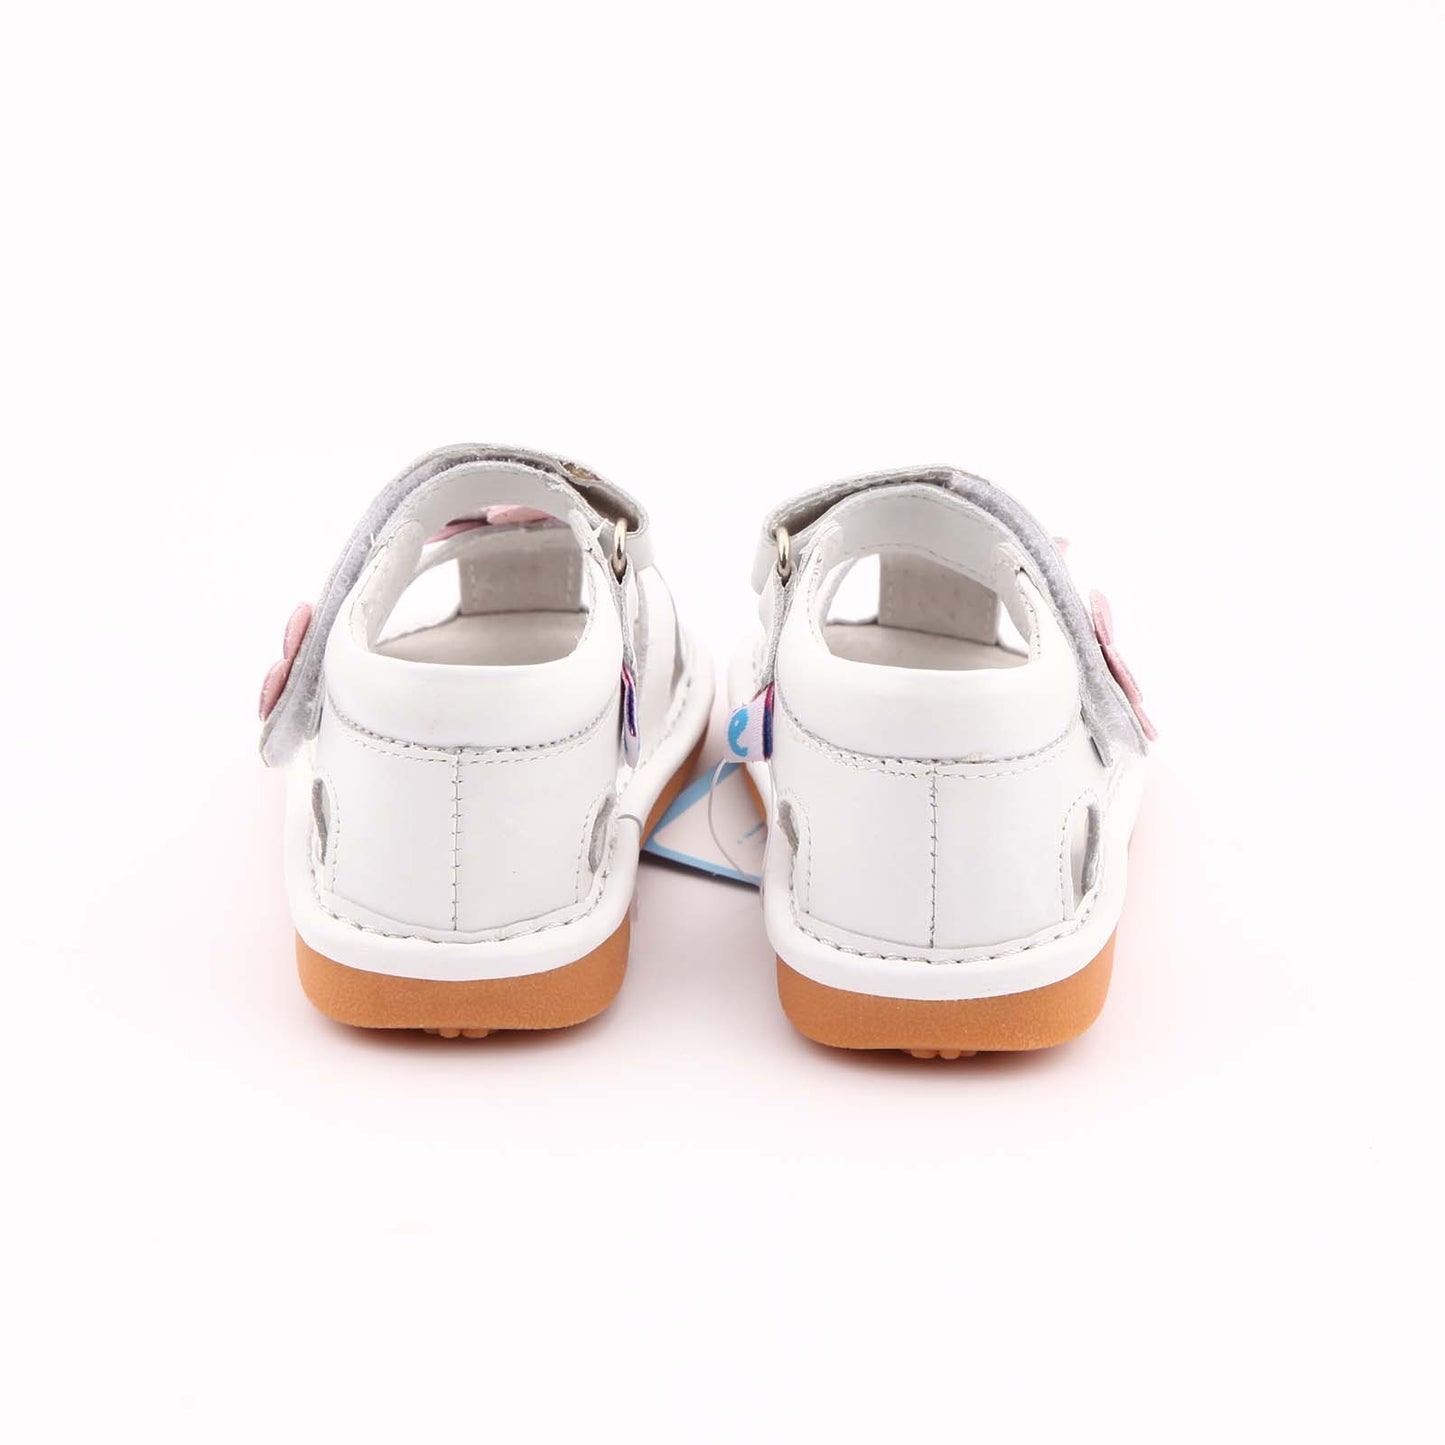 Freycoo - White Kayla Squeaky Shoes